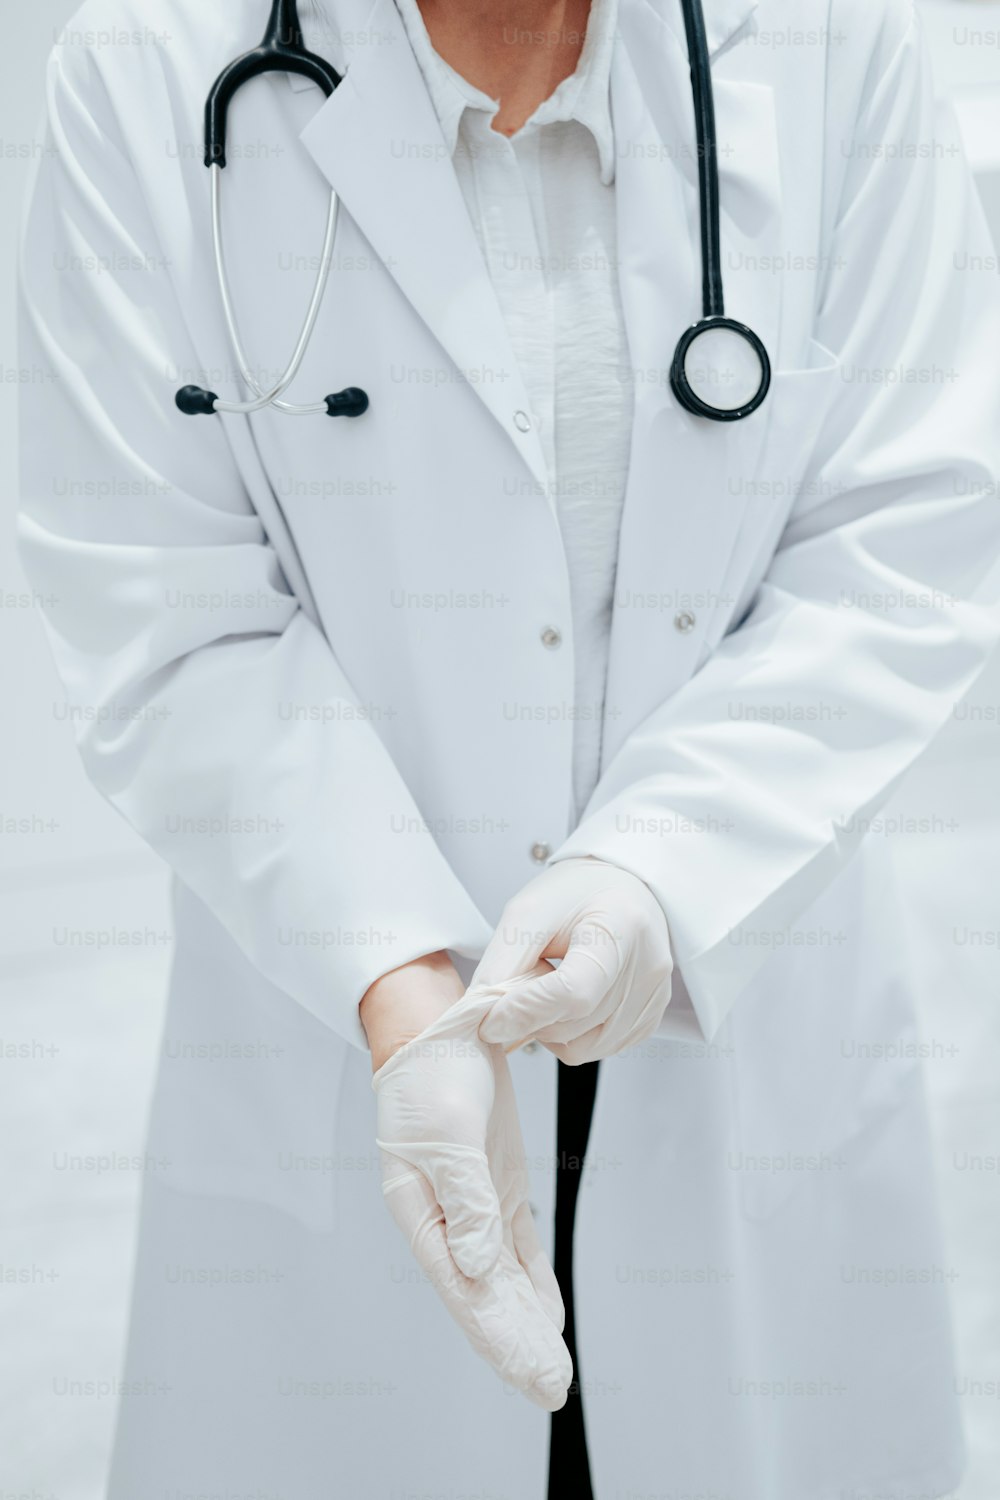 흰 코트와 흰 장갑을 낀 남자 의사